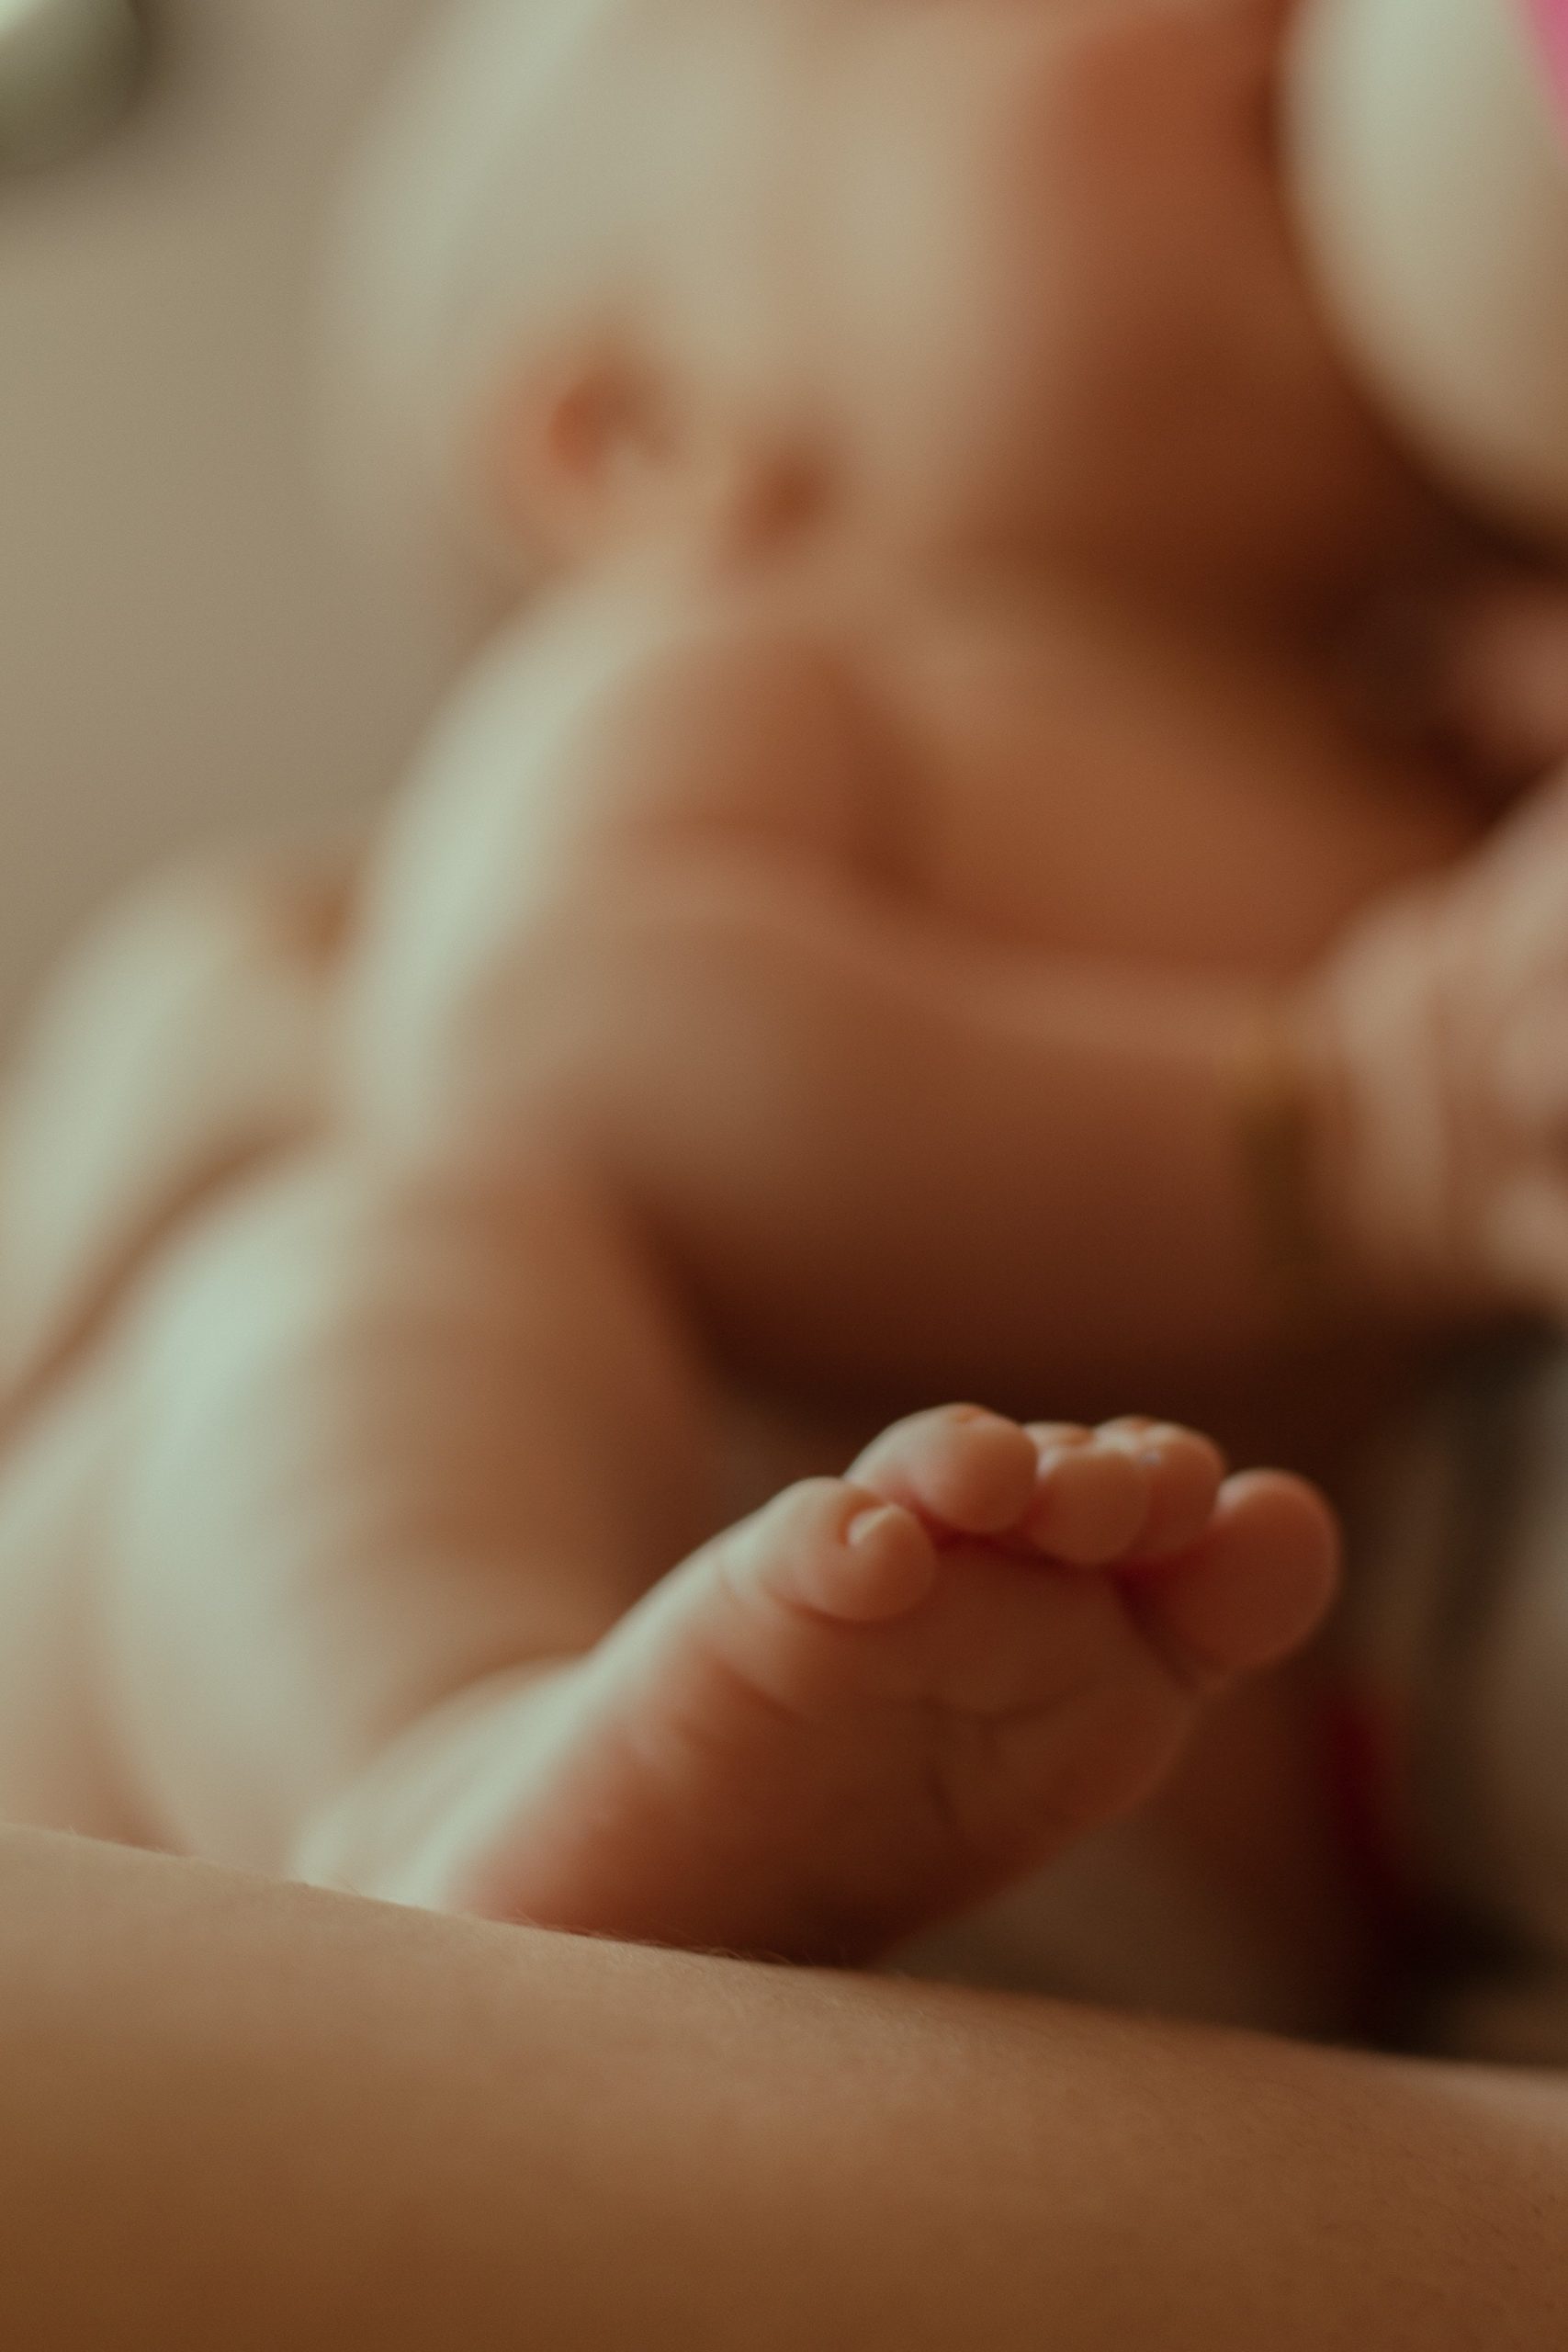 Miten valmistautua postpartum-aikaan? 5 vinkkiä synnytyksen jälkeisiin viikkoihin